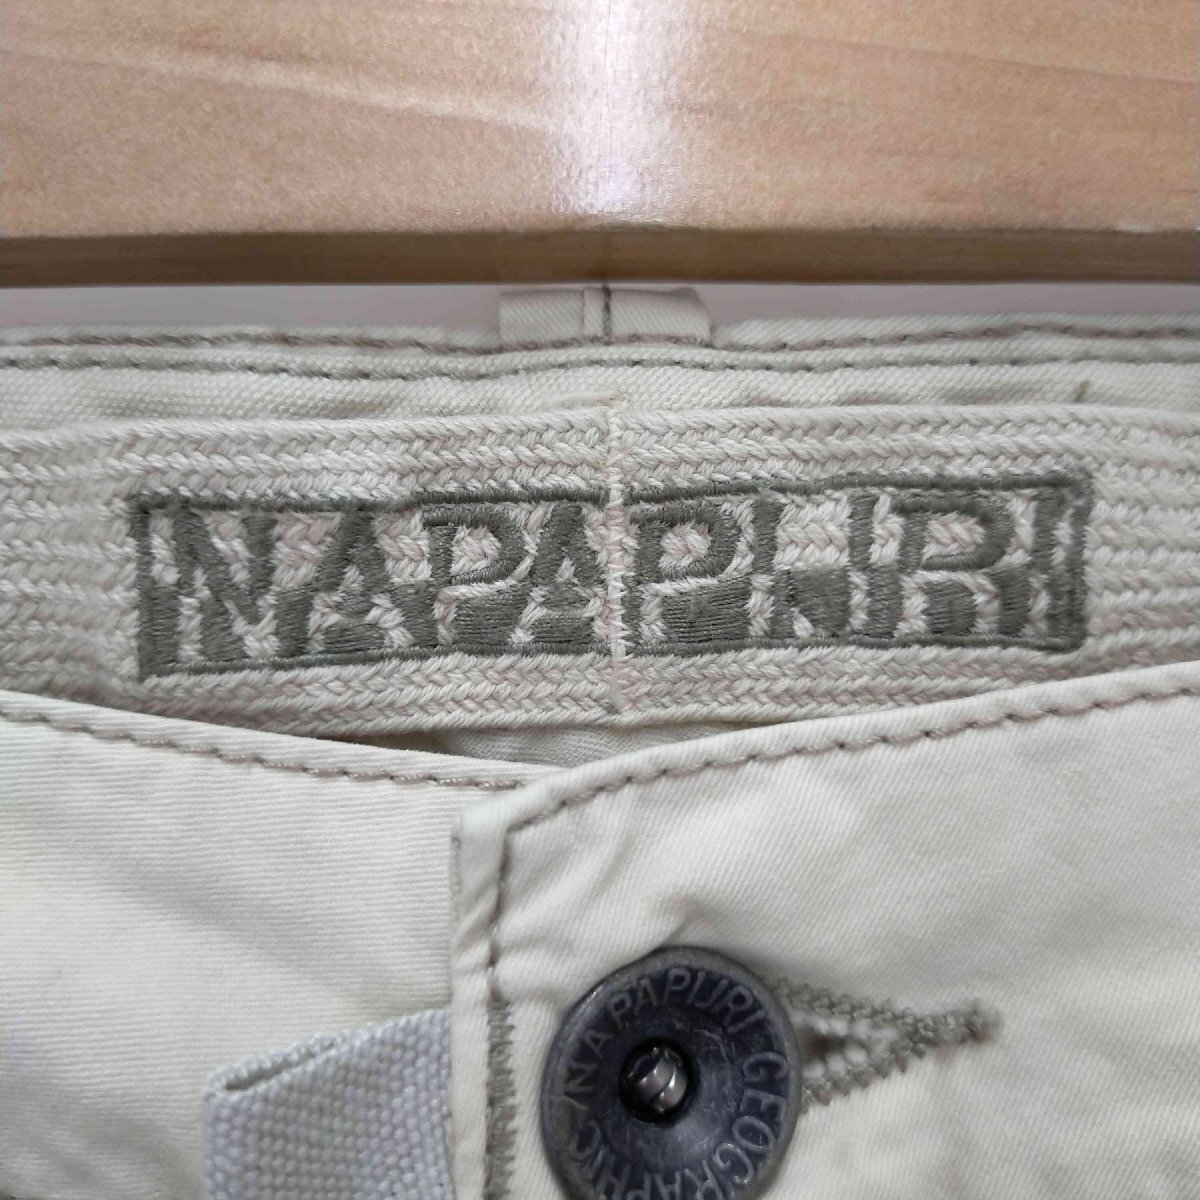 NAPAPIJRI(ナパピリ) ダブルニーコットンデザインパンツ メンズ 36/34 中古 古着 1022_画像6